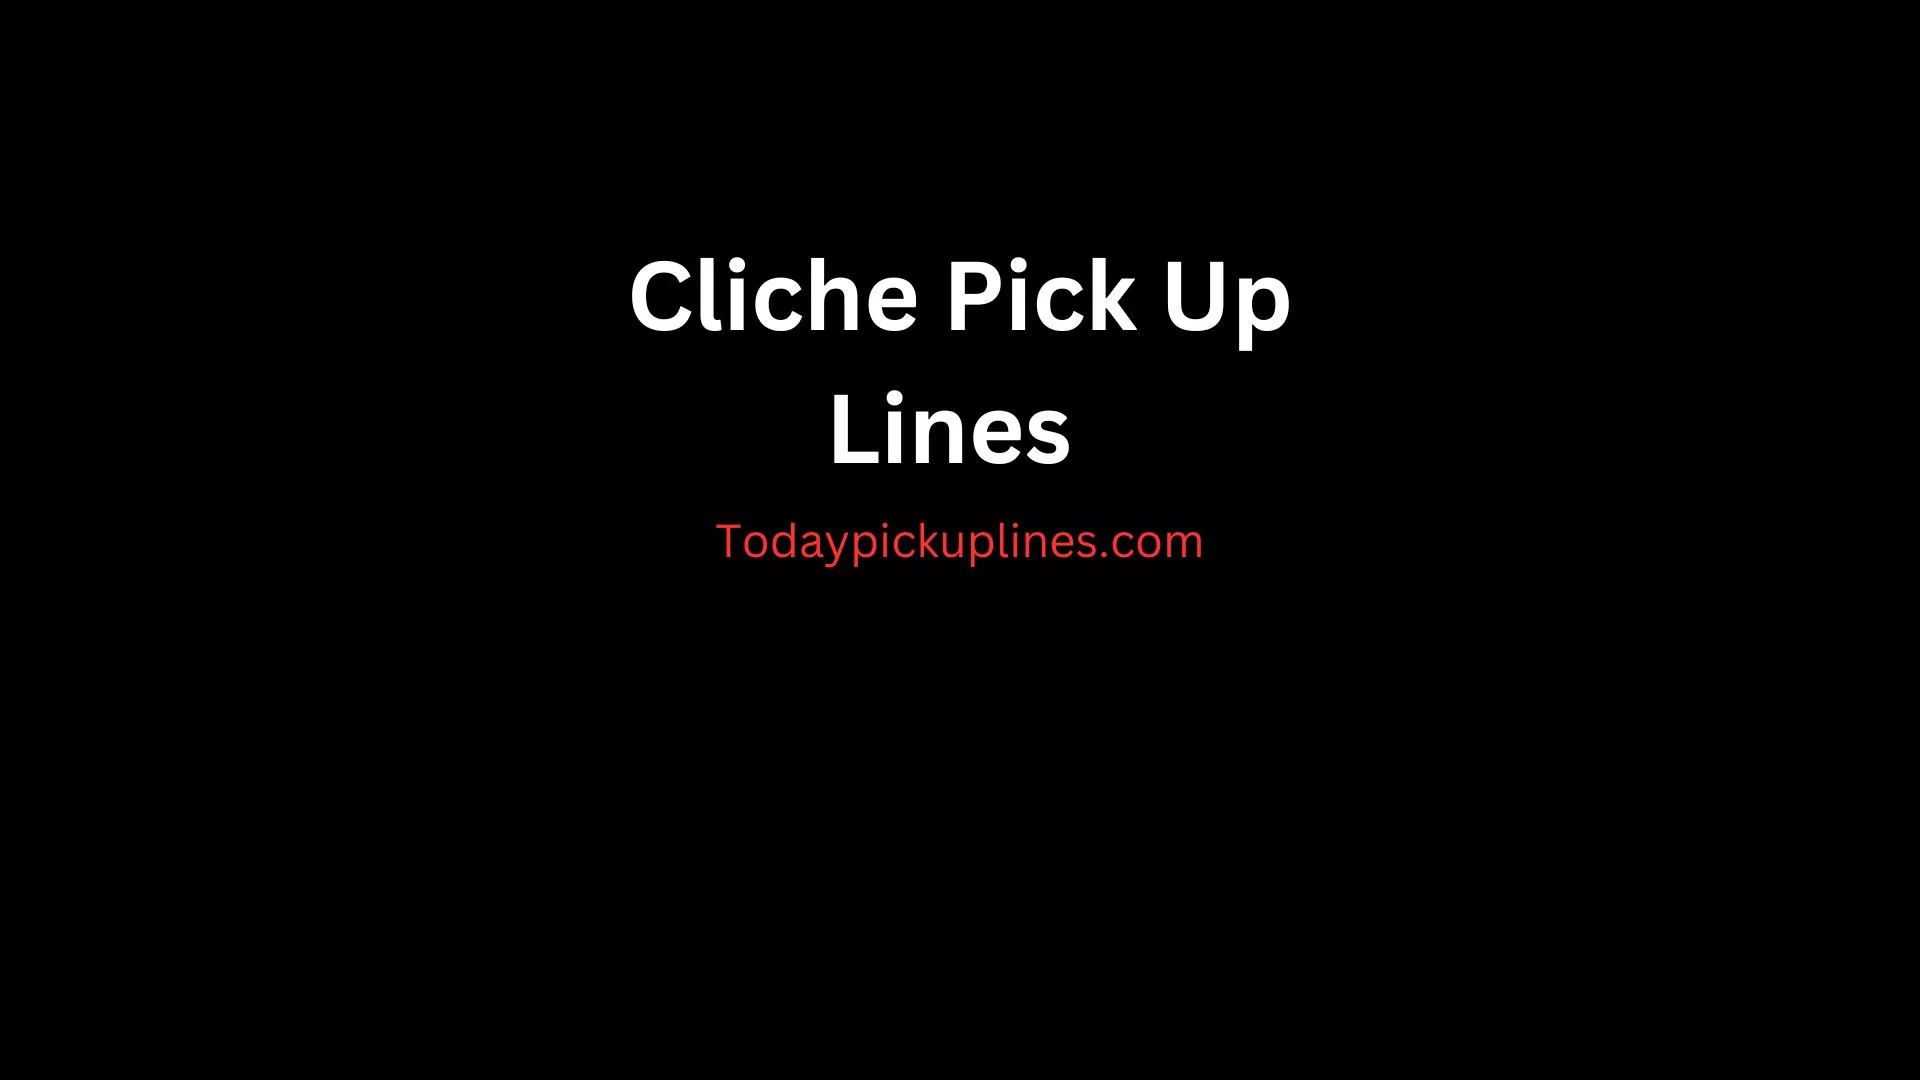 Cliche Pick Up Lines